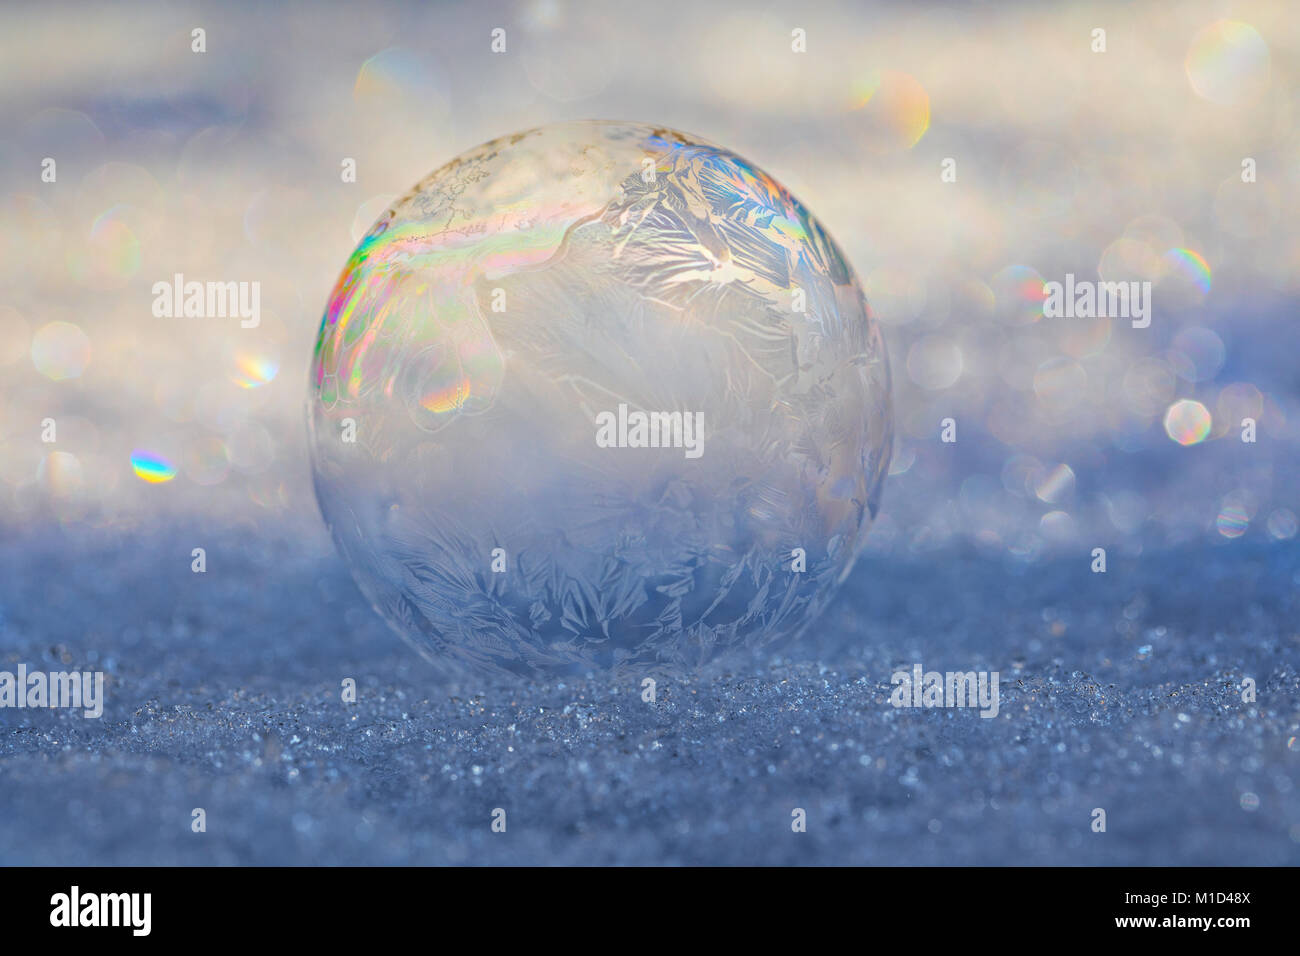 Frozen Bubble sulla neve con i cristalli di ghiaccio che si formano sulla bolla e rifrazione della luce creando un motivo a prisma Foto Stock